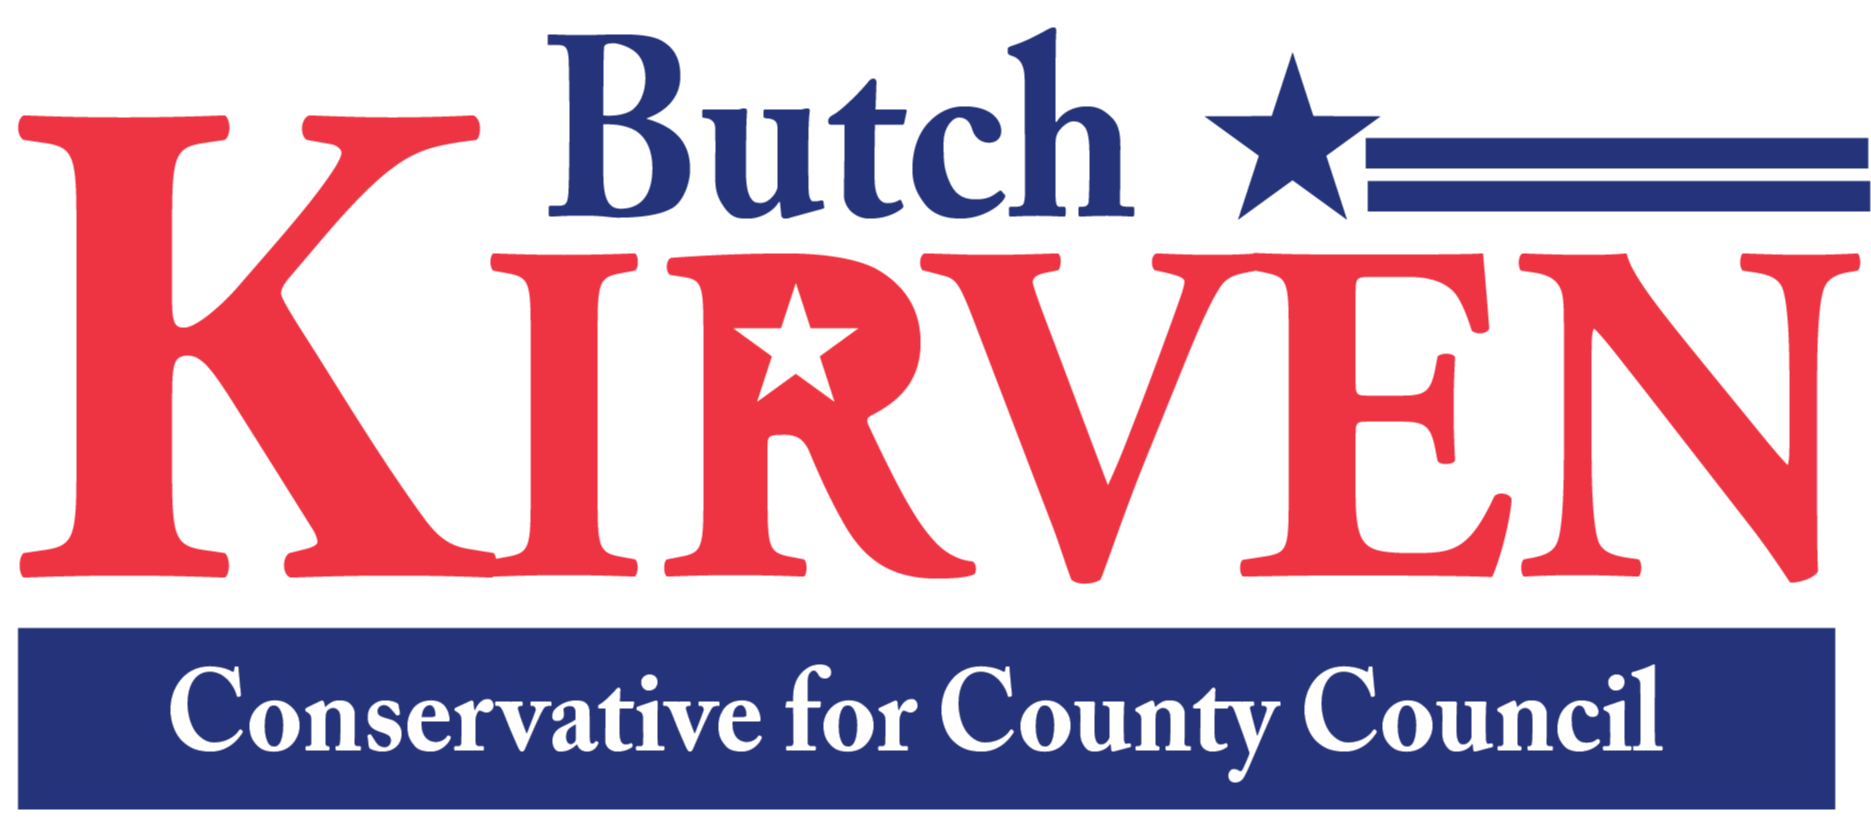 Re-elect Butch Kirven logo